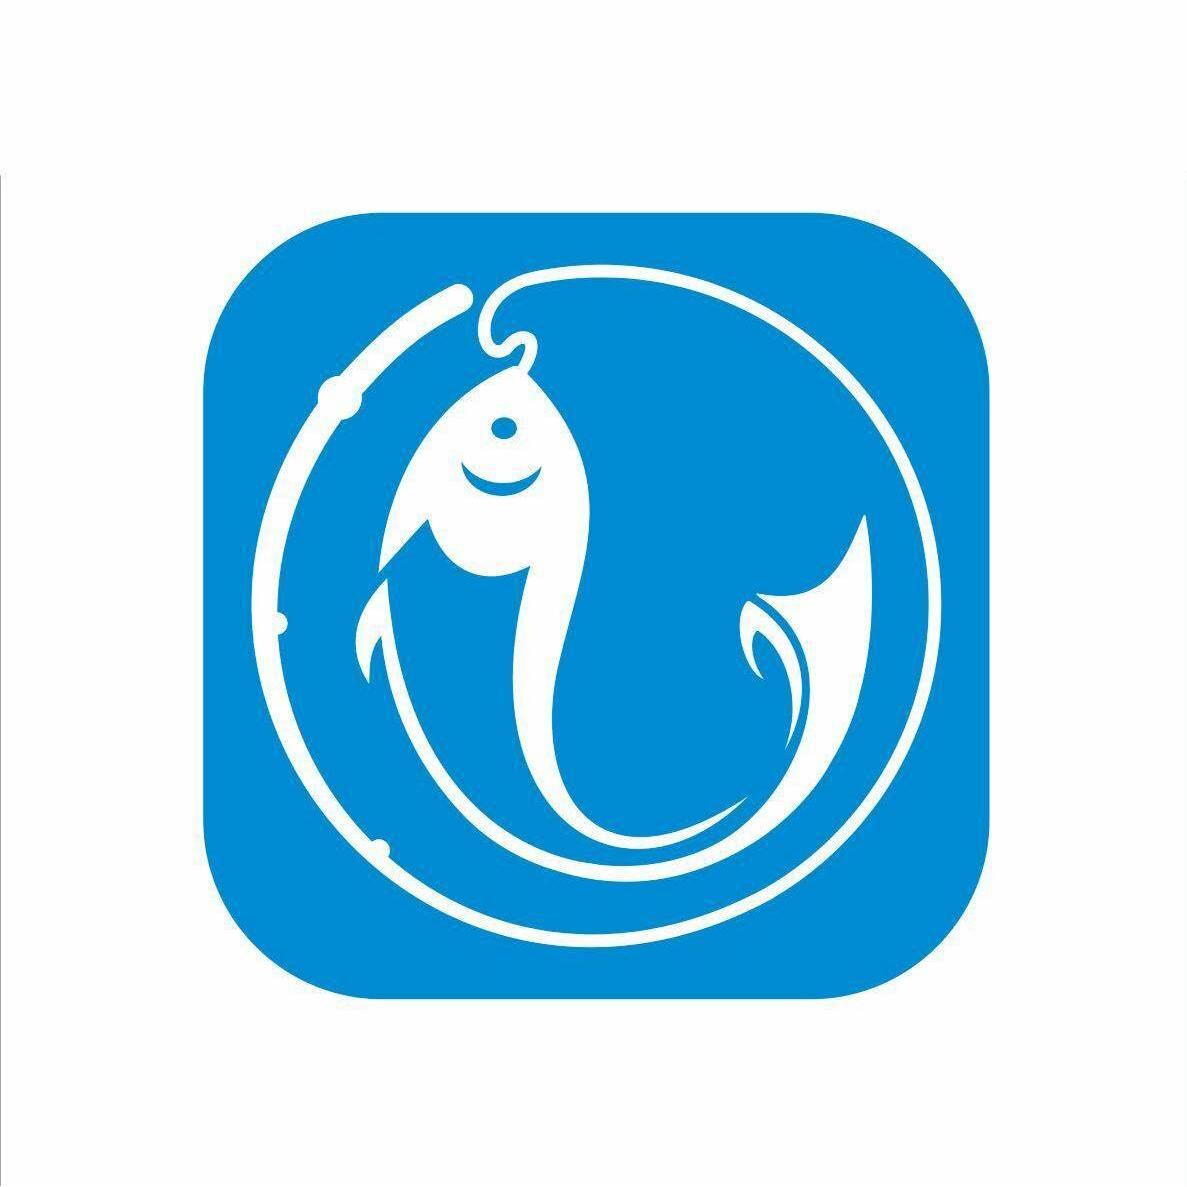 钓鱼logo图标大全图片